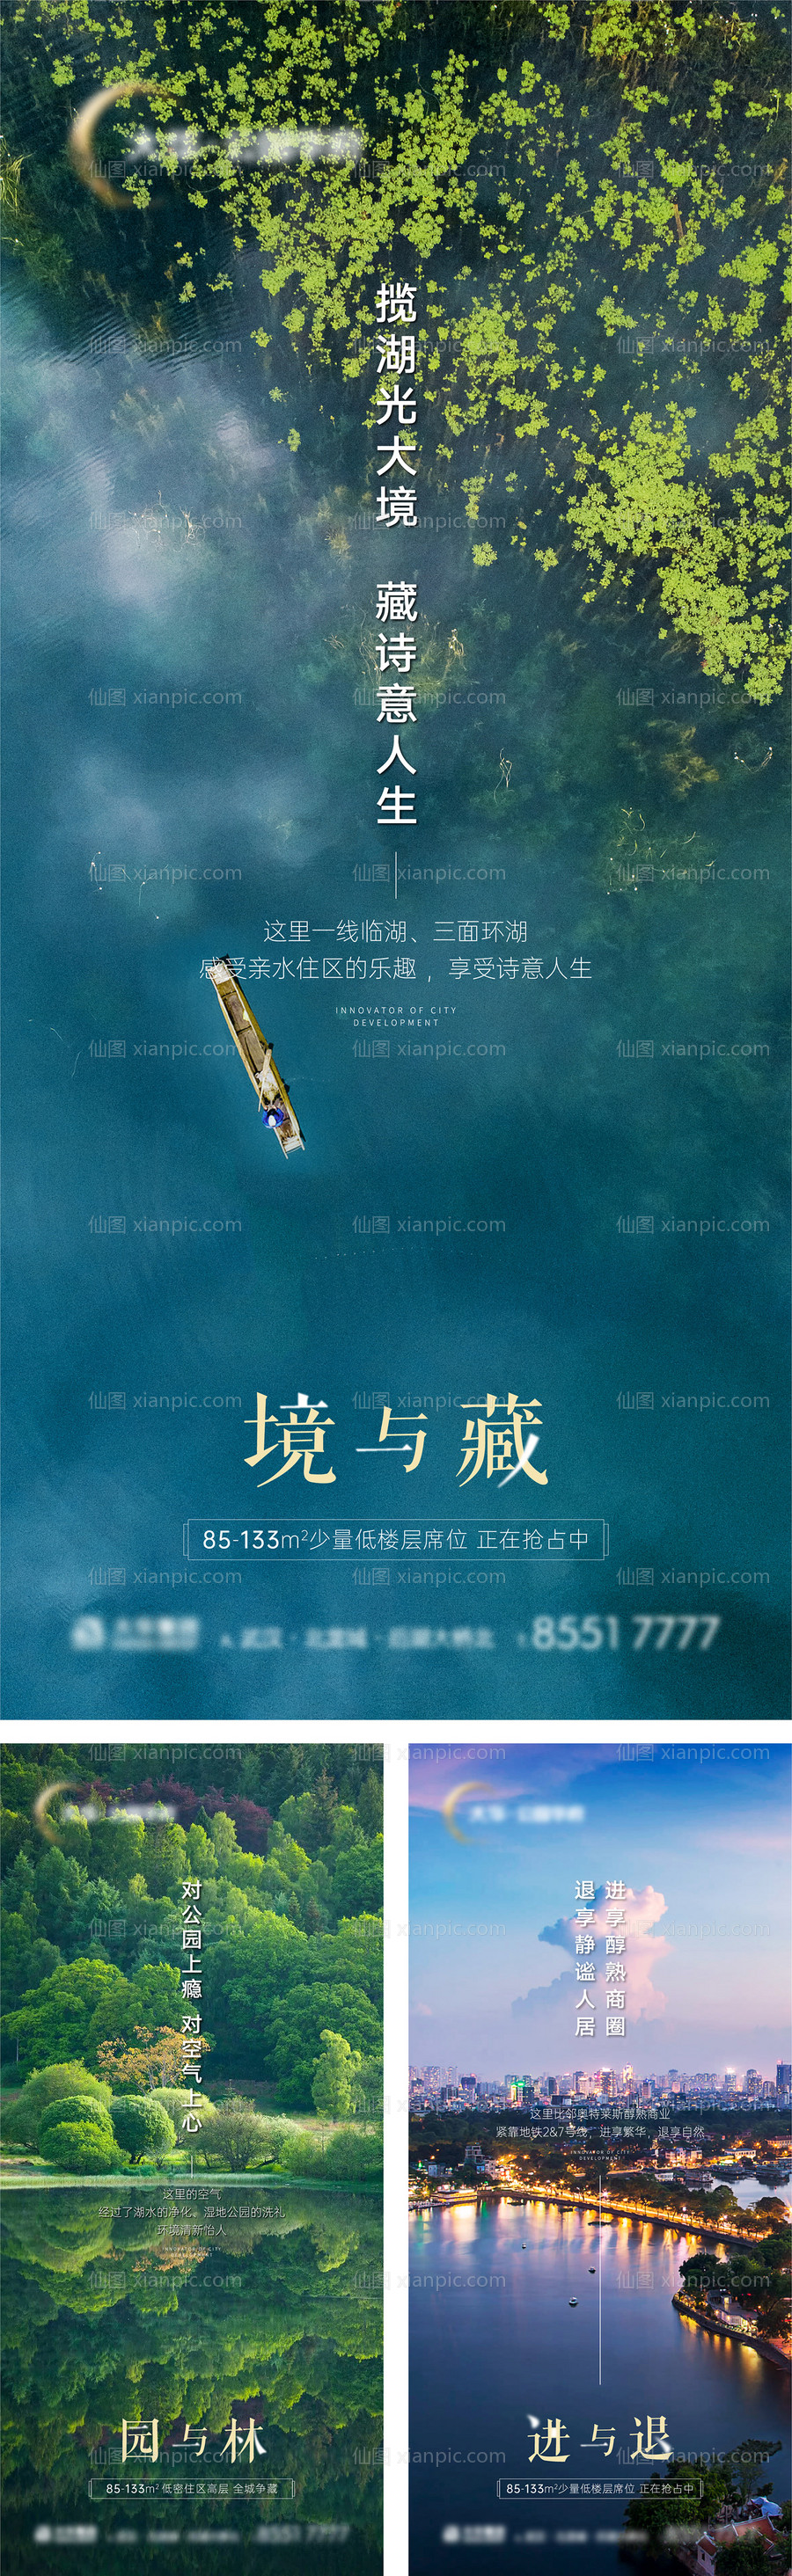 素材乐-公园湖景滨江价值点配套系列海报